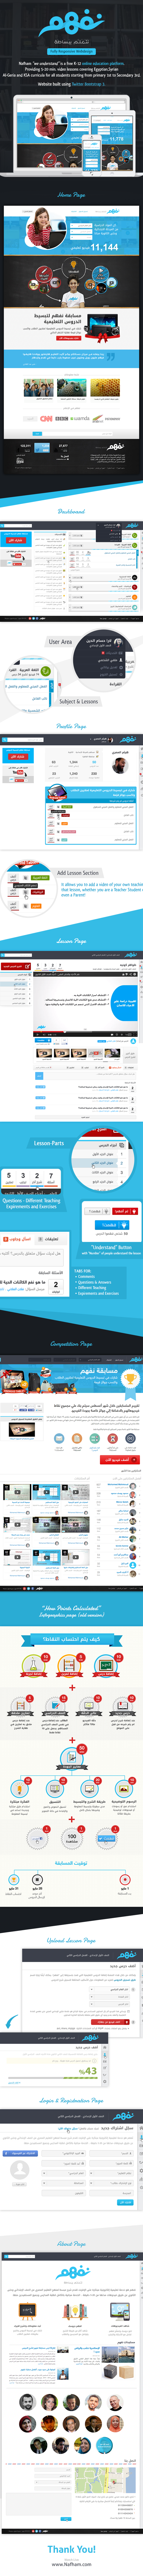 Webdesign Nafham Education online ui-ux design Interface Platform start-up dashboard profile